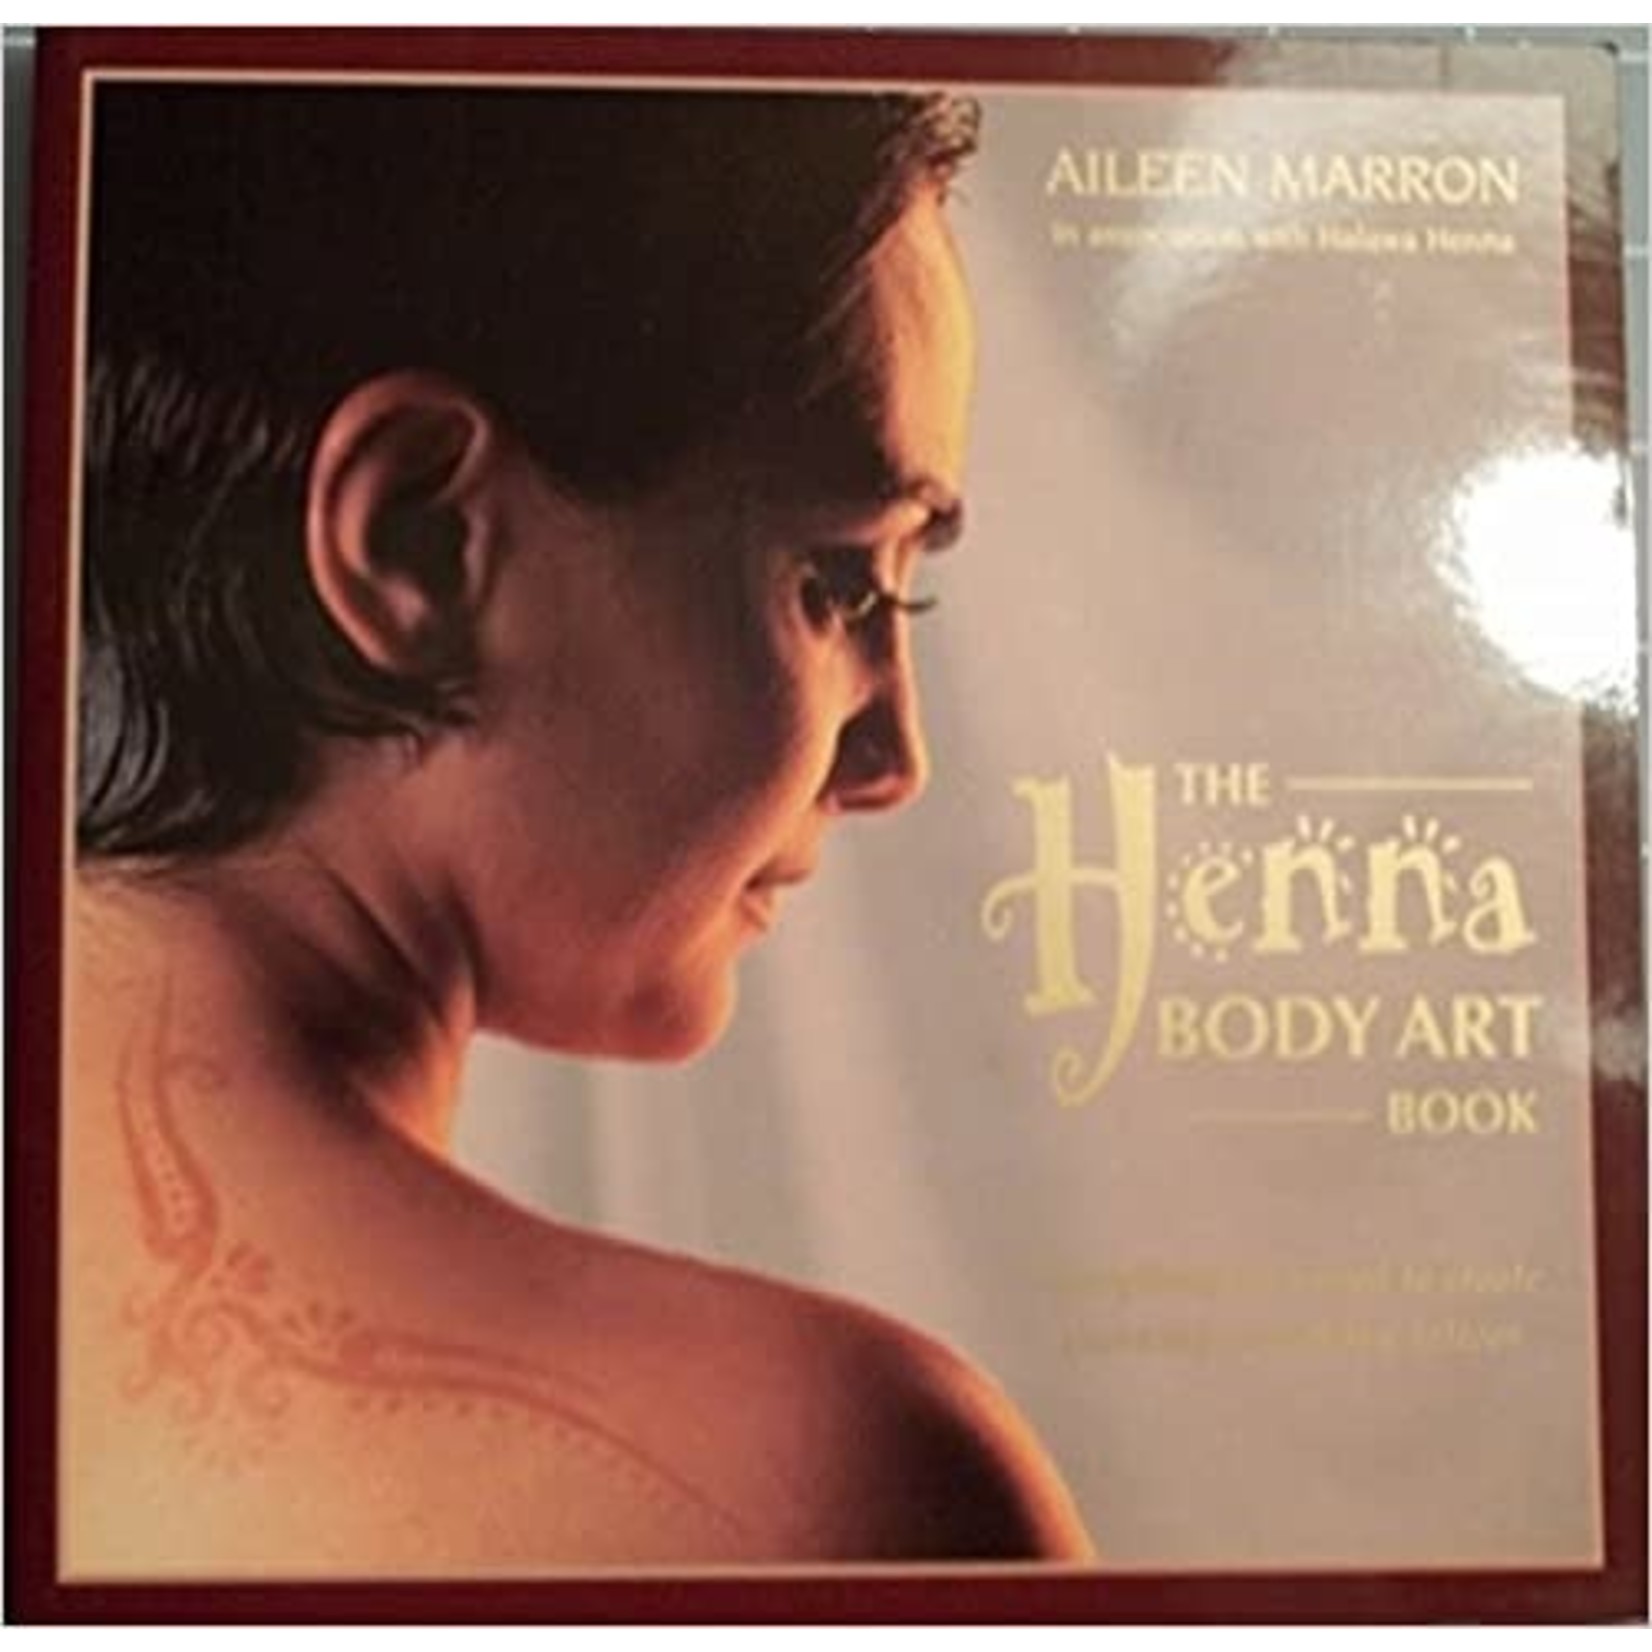 Marron, Aileen Marron, Aileen - The Henna Body Art Book